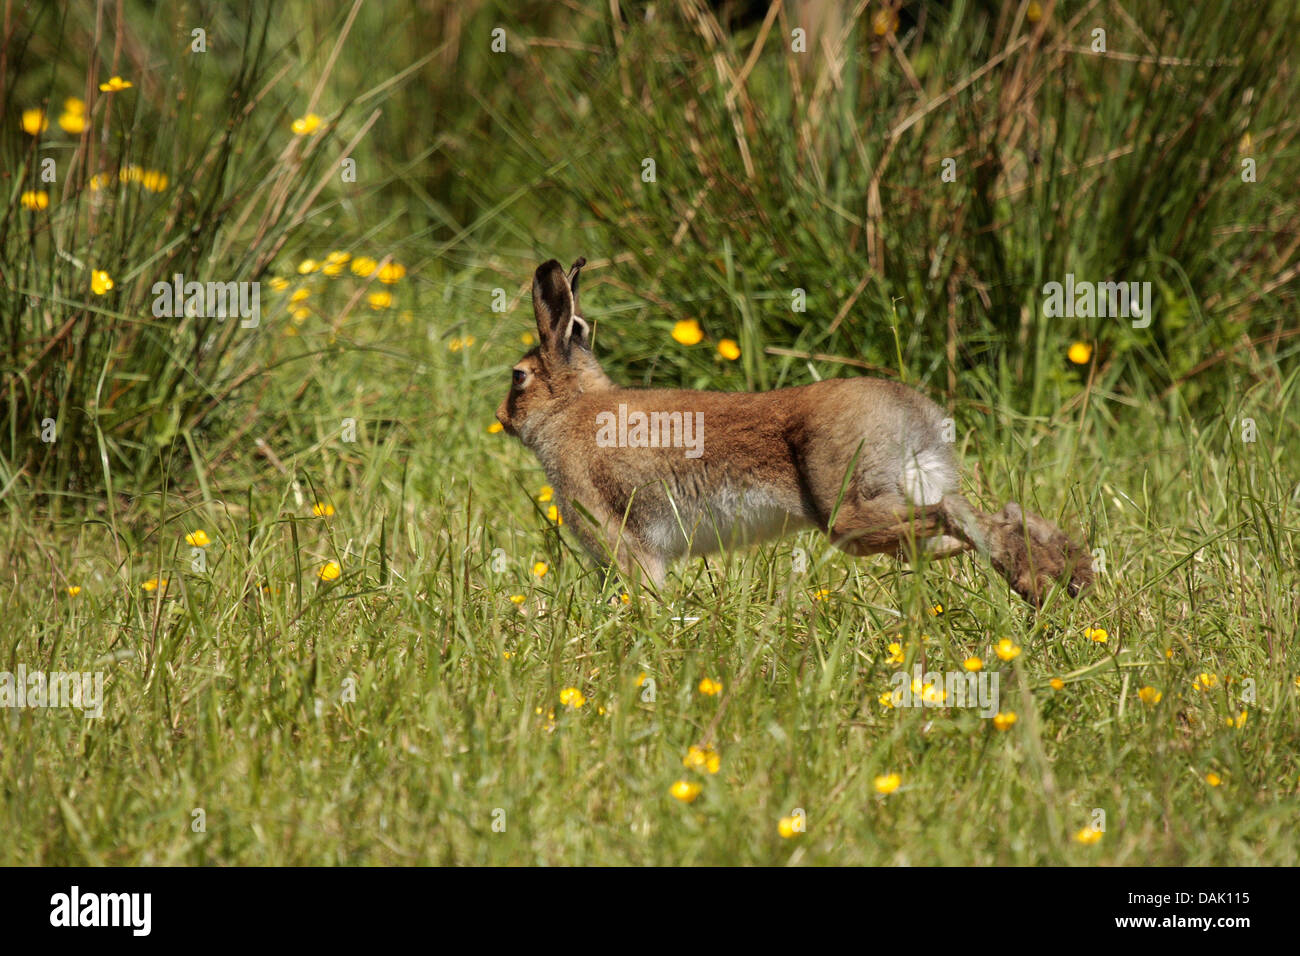 Irish Hare on the run. Stock Photo